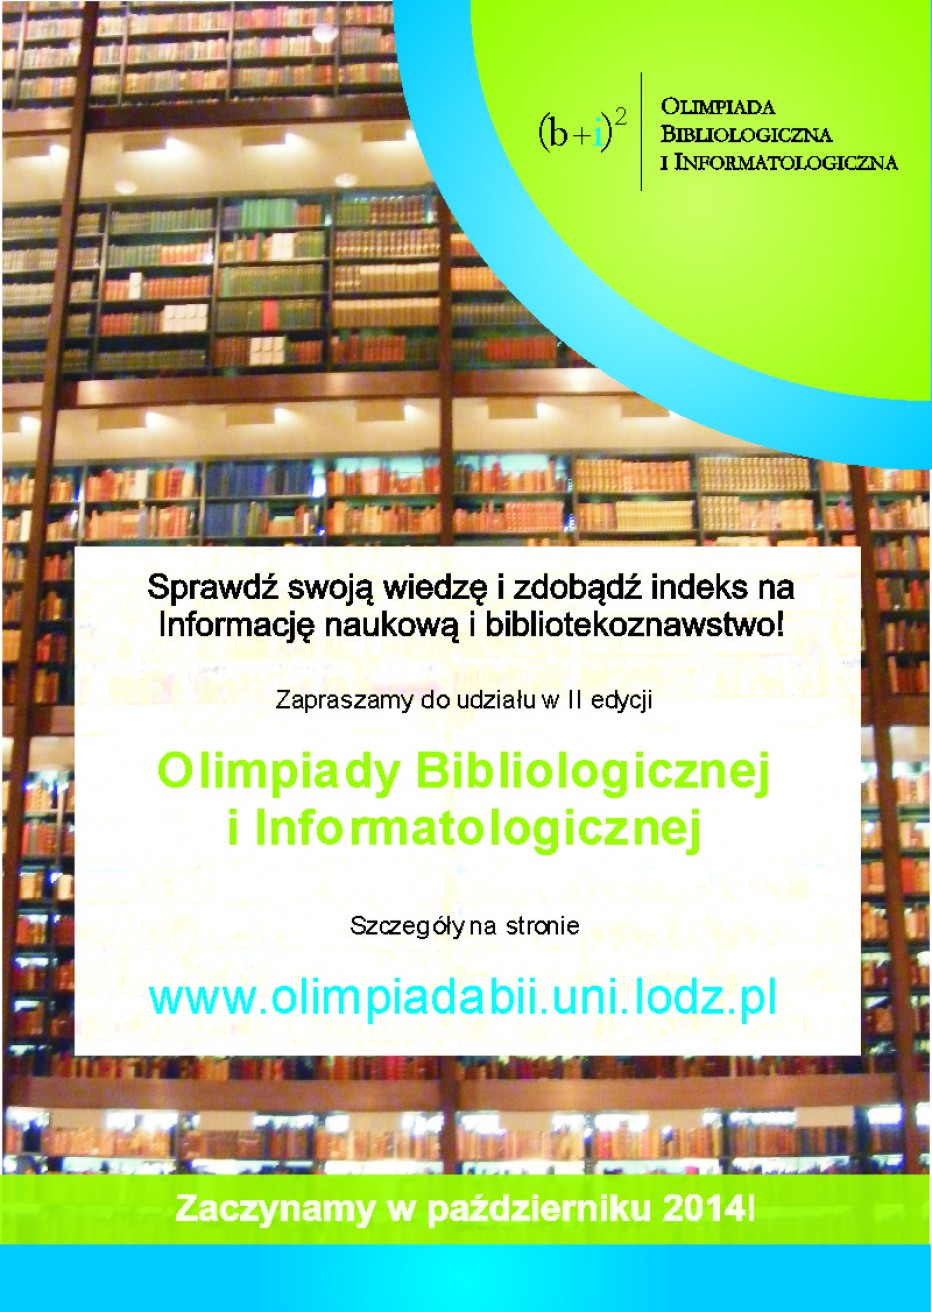 Olimpiada Bibliologiczna i Informatologiczna